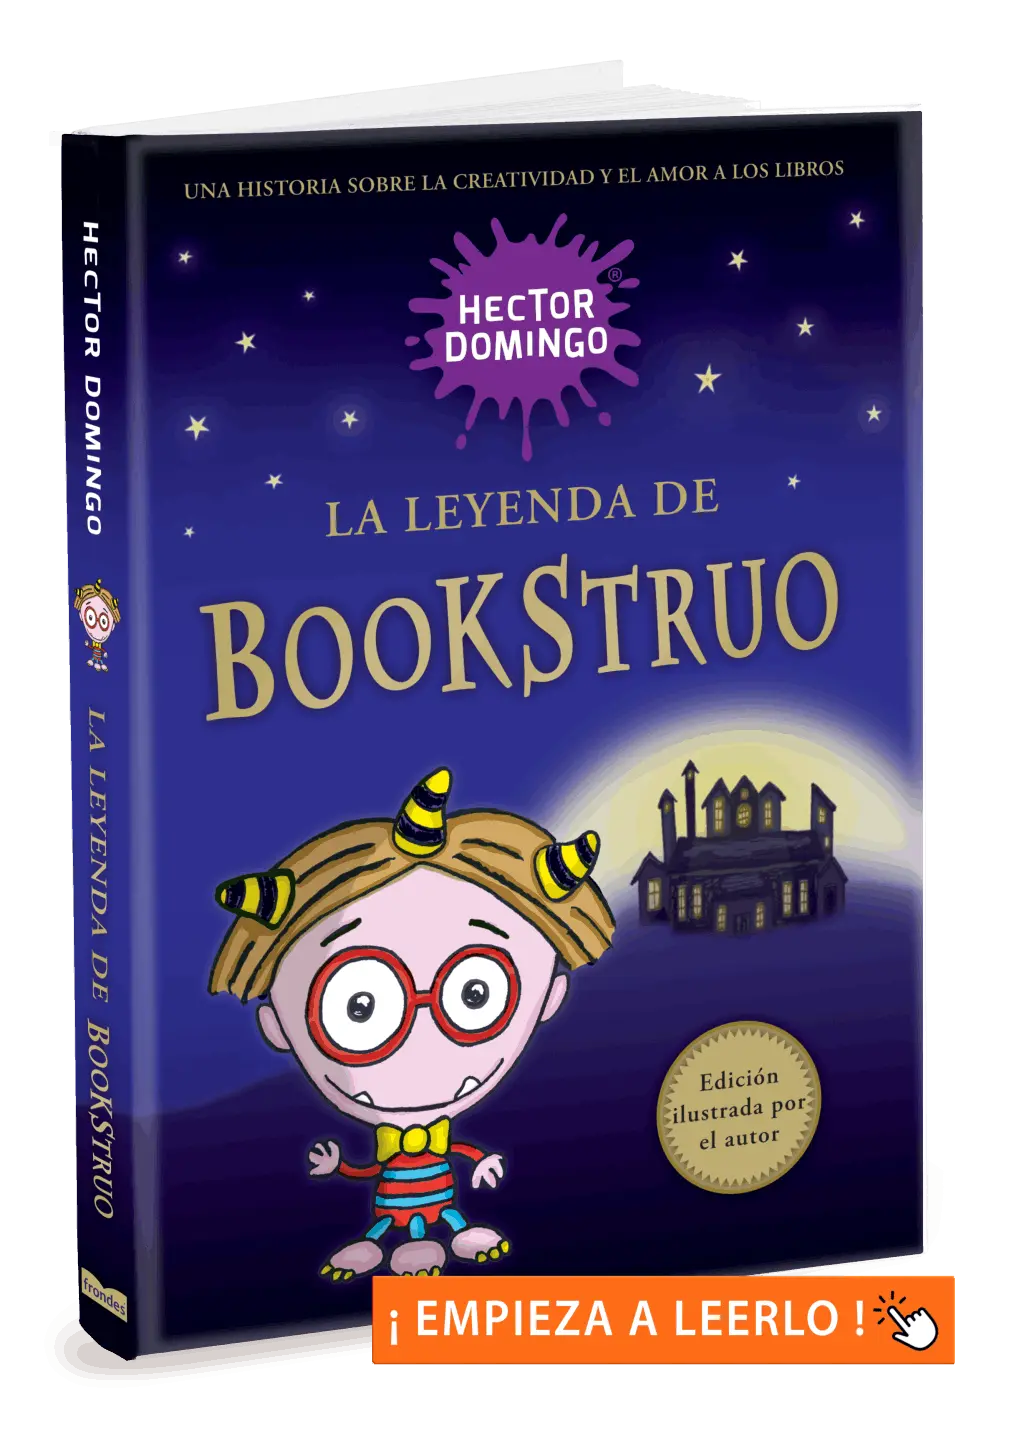 La leyenda de Bookstruo, por Héctor Domingo. Libros infantiles y juveniles.